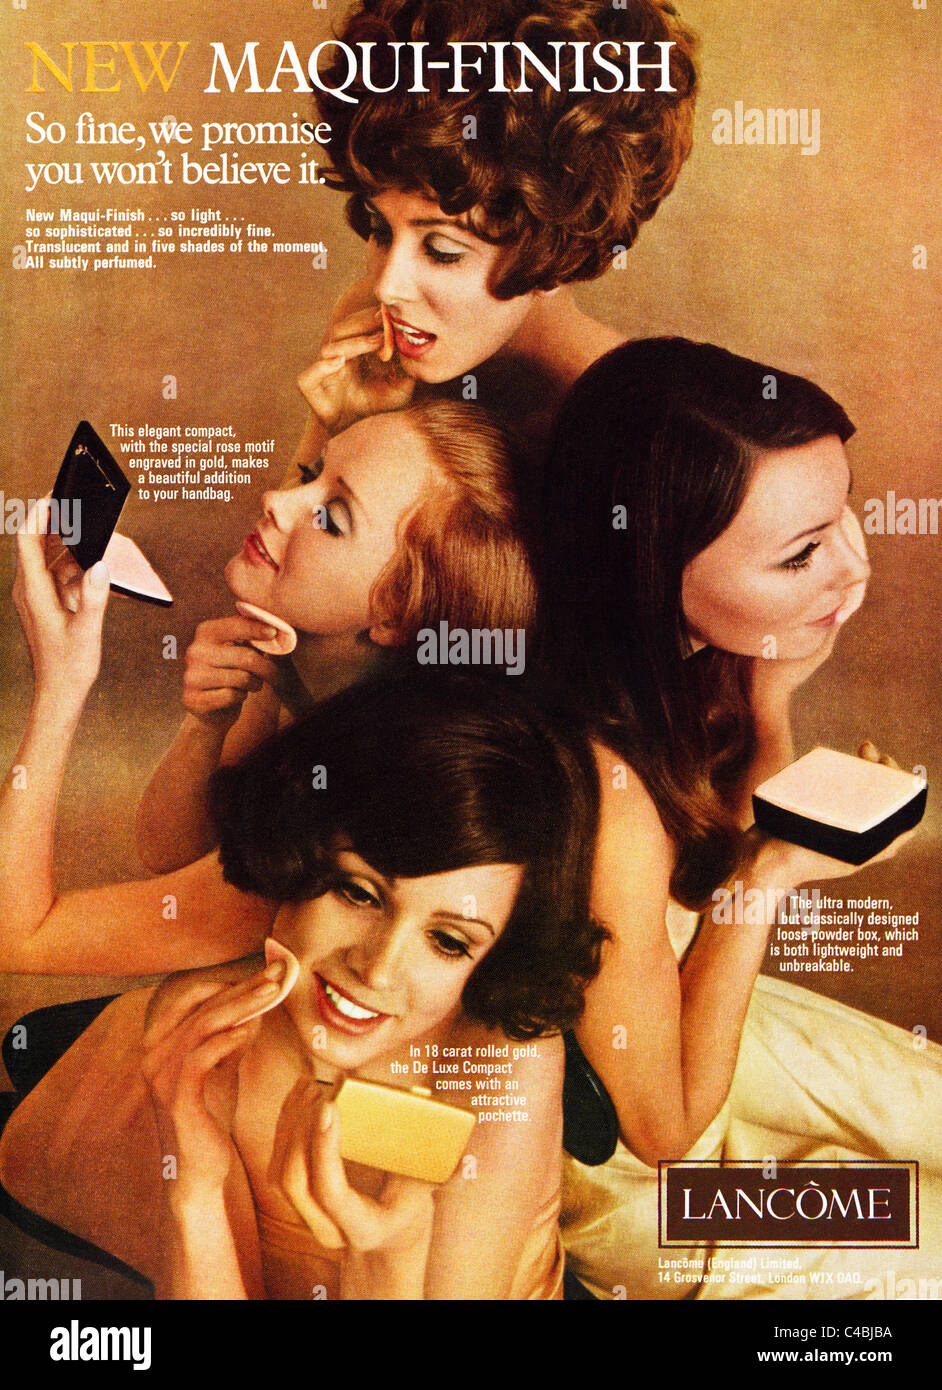 Pagina piena originale di annuncio nella rivista di moda circa 1969 per cosmetici LANCOME Foto Stock